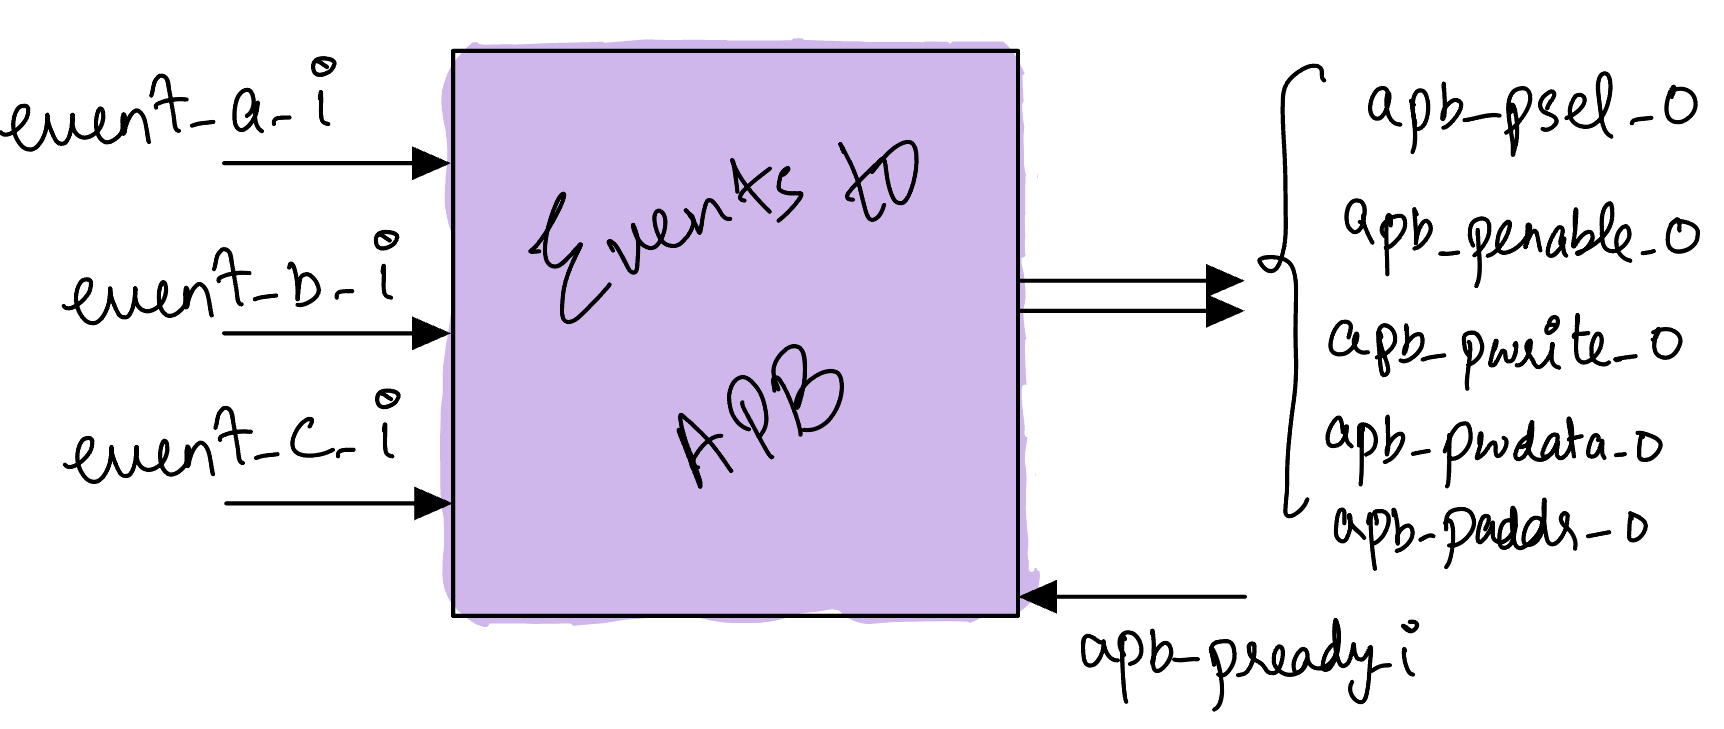 eventsToAPB_block_diagram